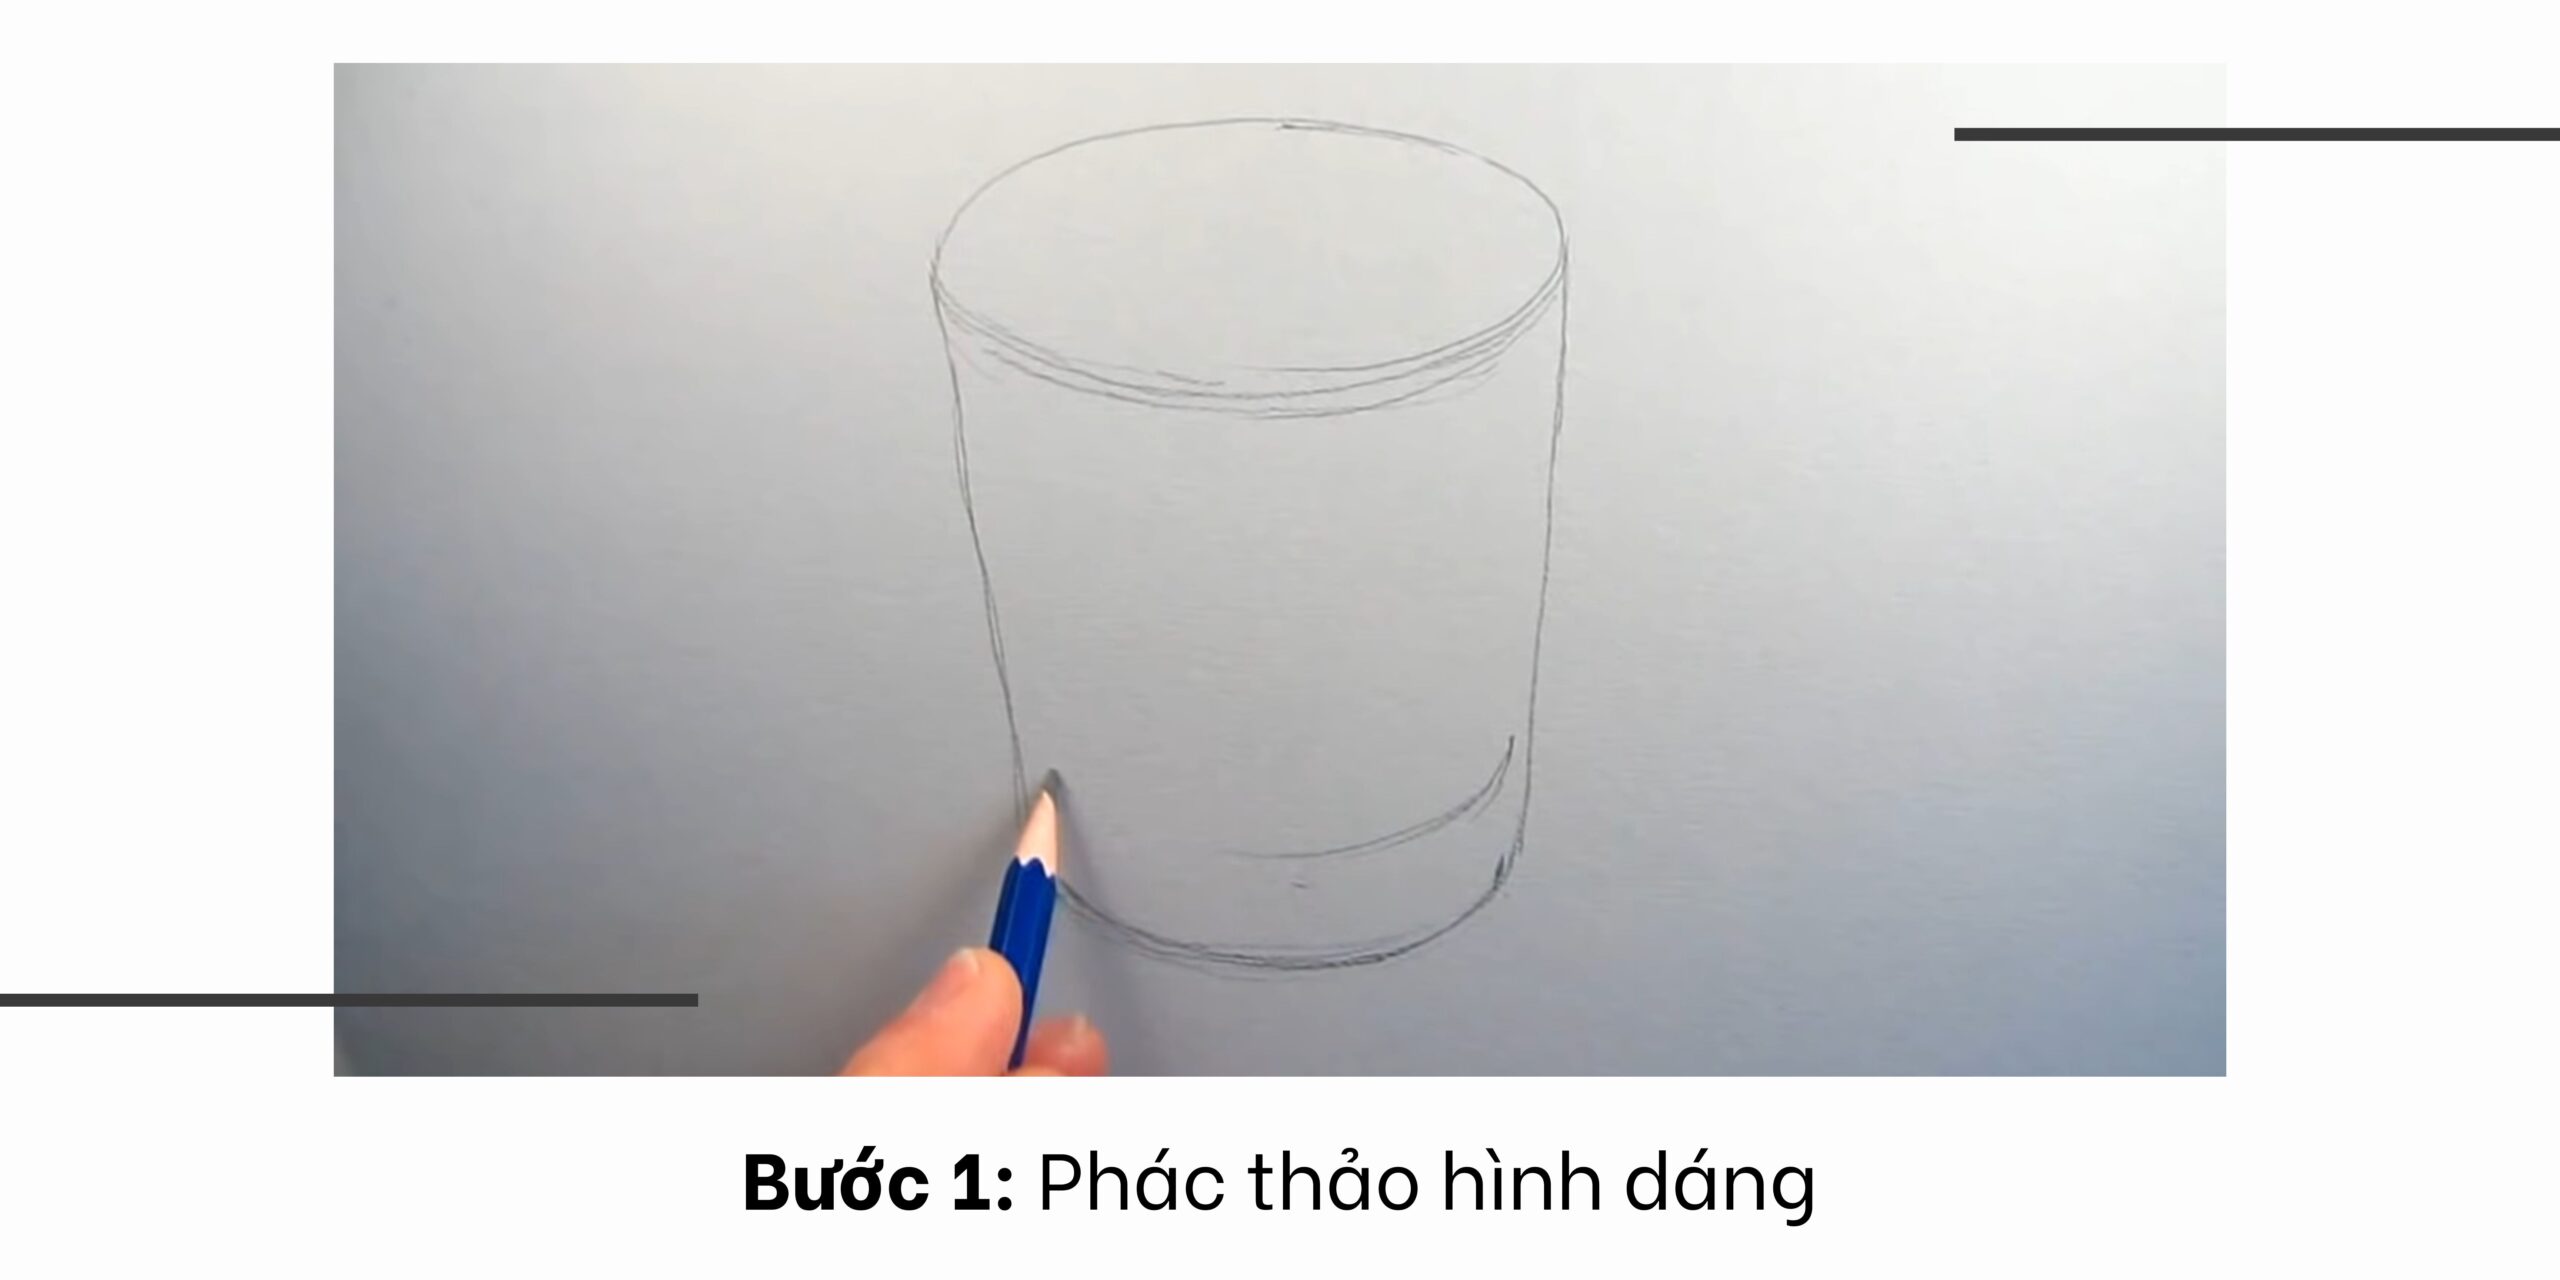 Vẽ cái cốc  cái ly  How to draw a cup  Vẽ siêu dễ cùng Hi Art Cute   YouTube